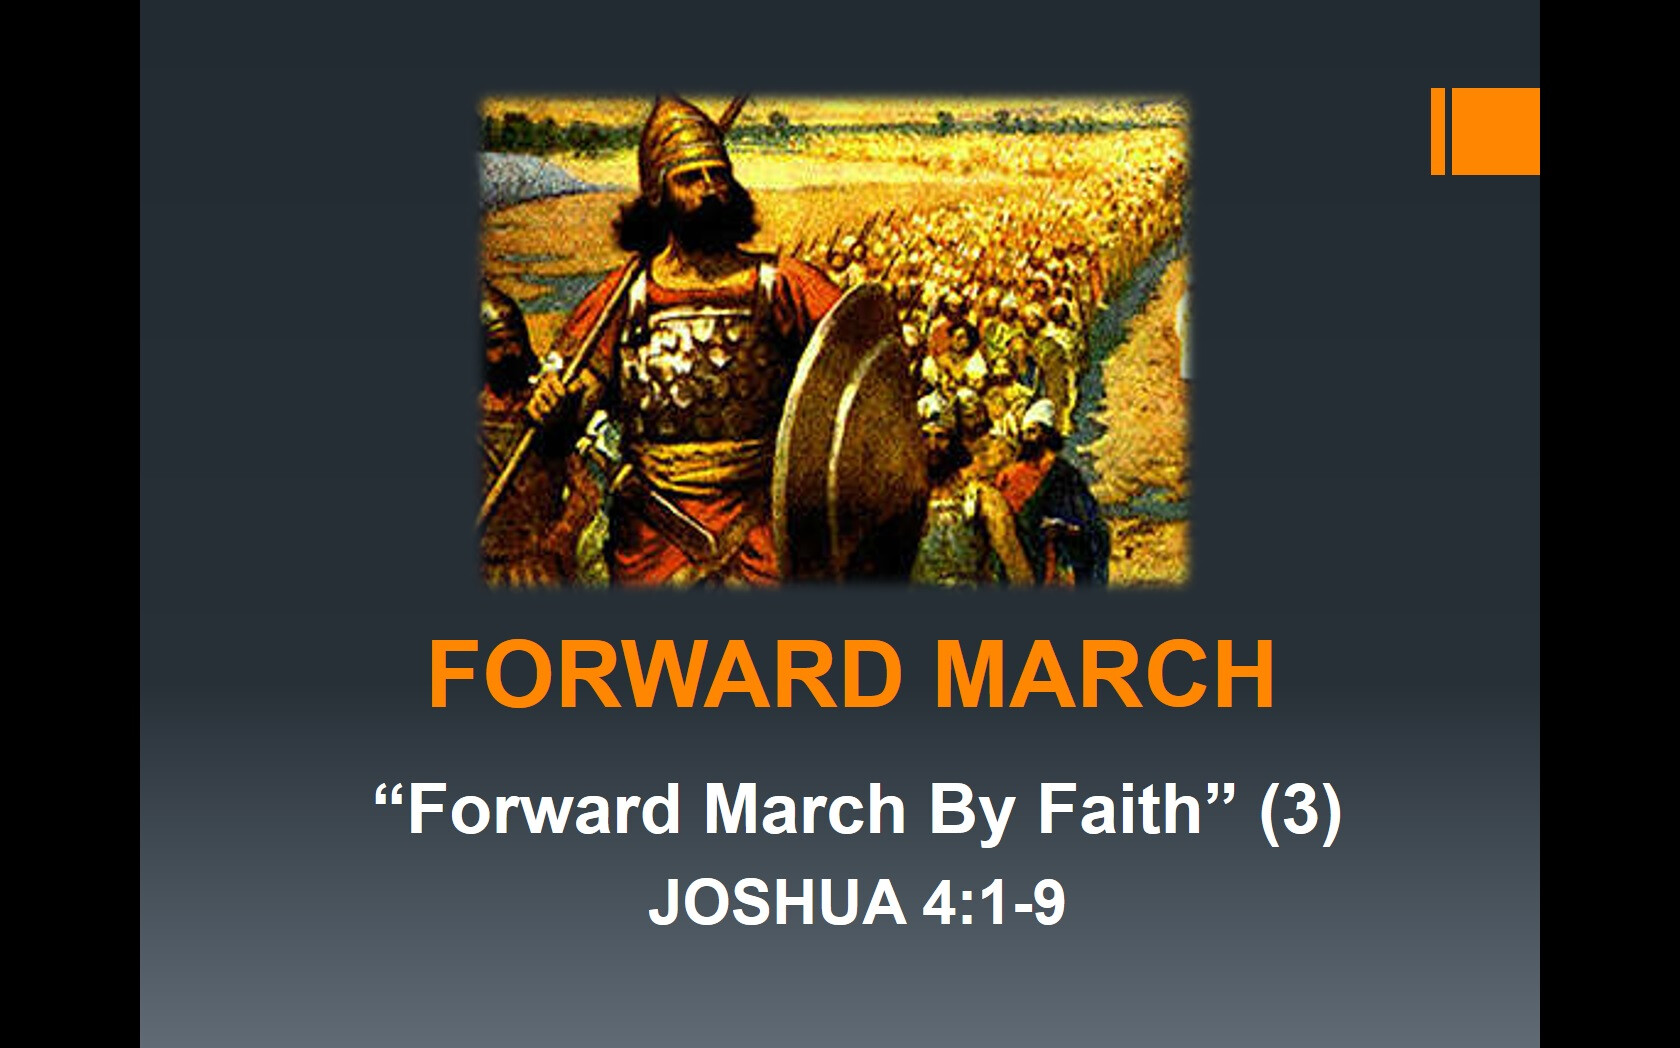 Forward March By Faith (3)